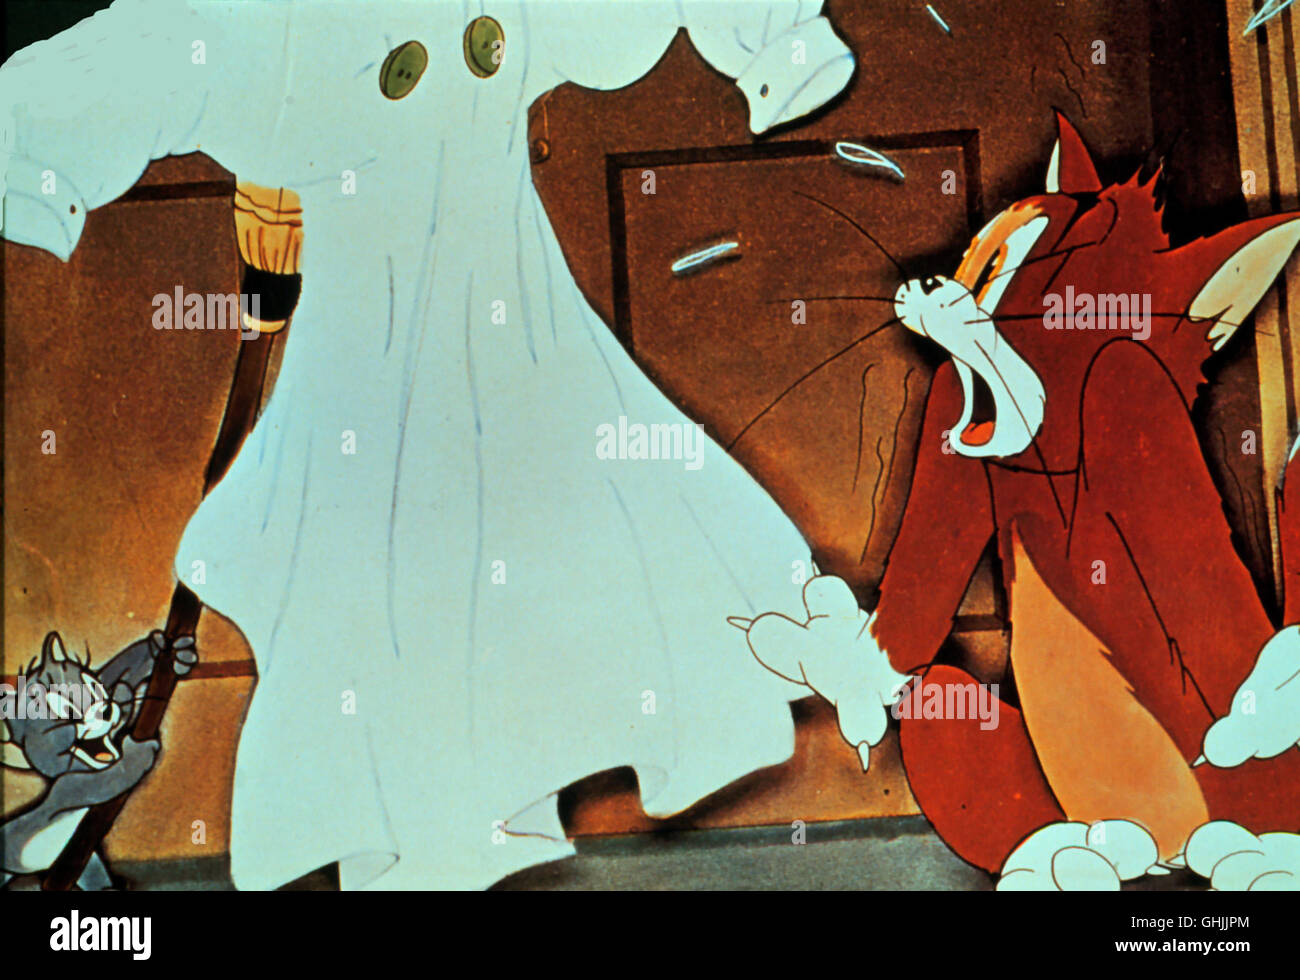 Ab dem 5.Settembre treibt das berühmteste aller Trickfilmpärchen, Tom und Jerry, wieder seine Späße im Ersten. aka. Cartoon-Klassiker Im ersten Foto Stock